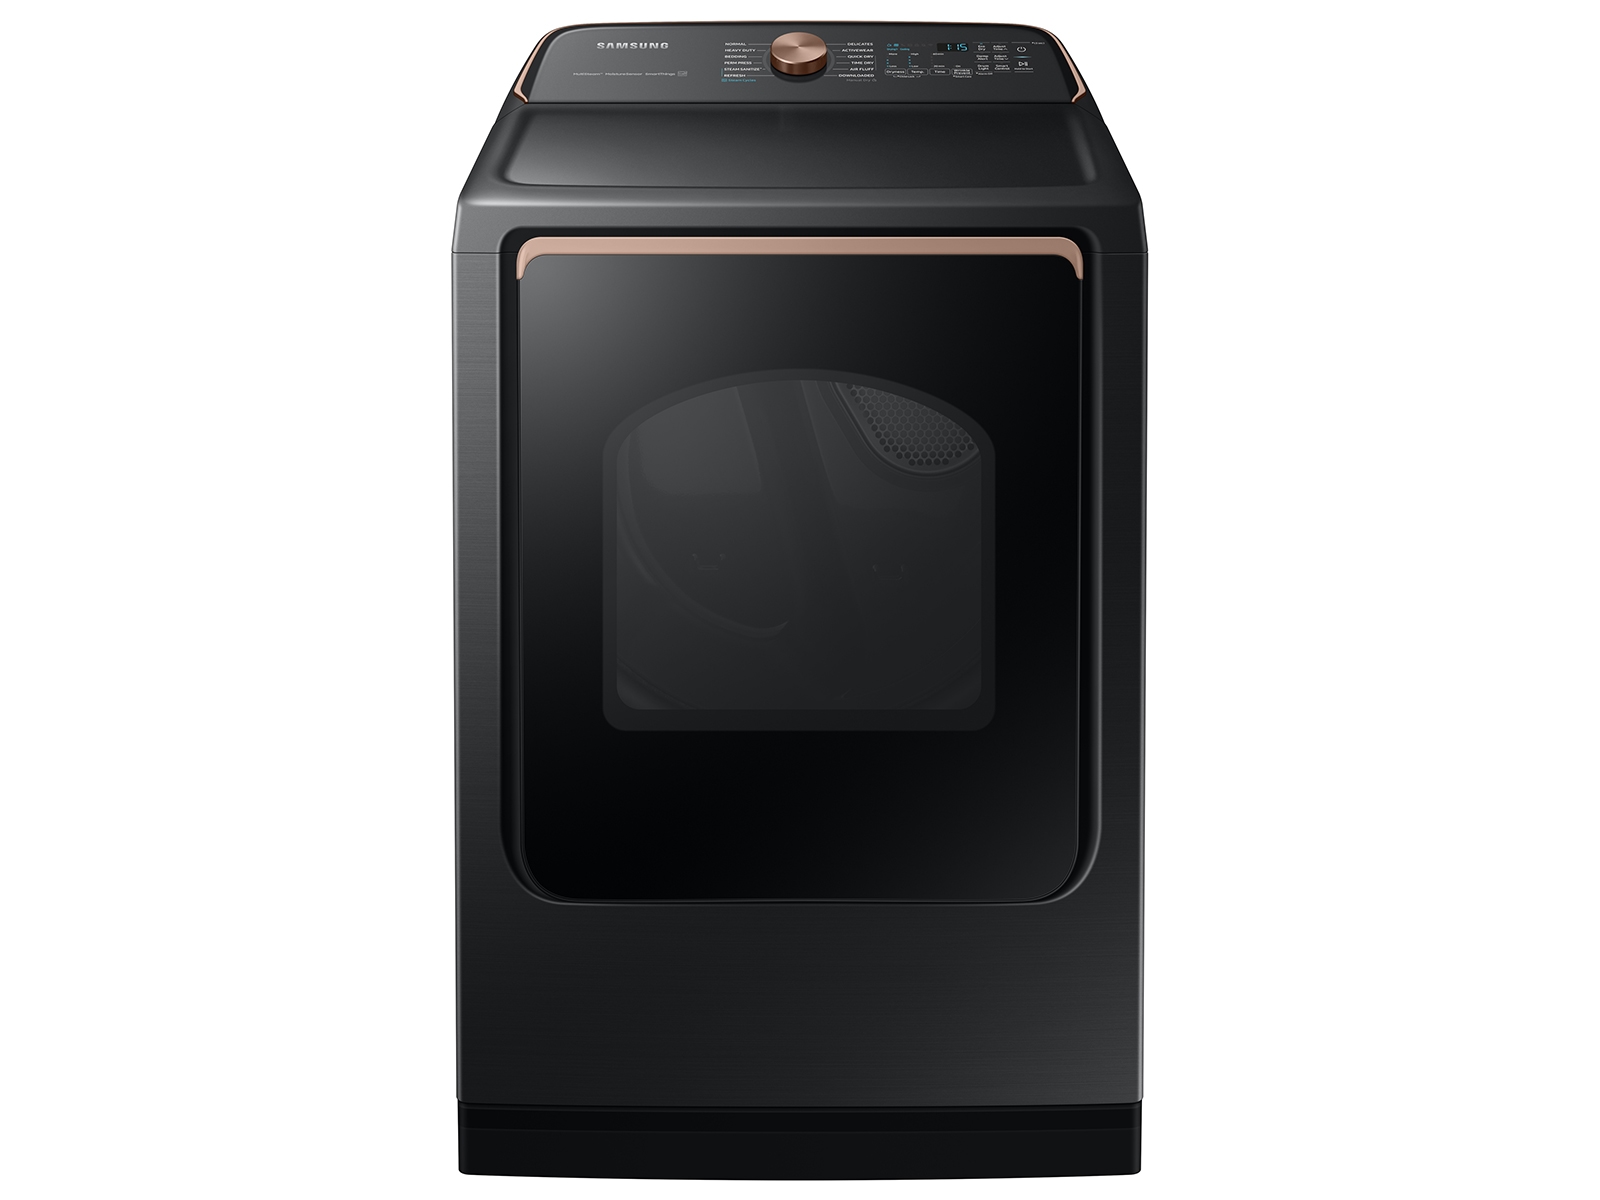 Samsung 7.4 cu. ft. Smart Electric Dryer with Steam Sanitize+ in Brushed Black(DVE55A7700V/A3)